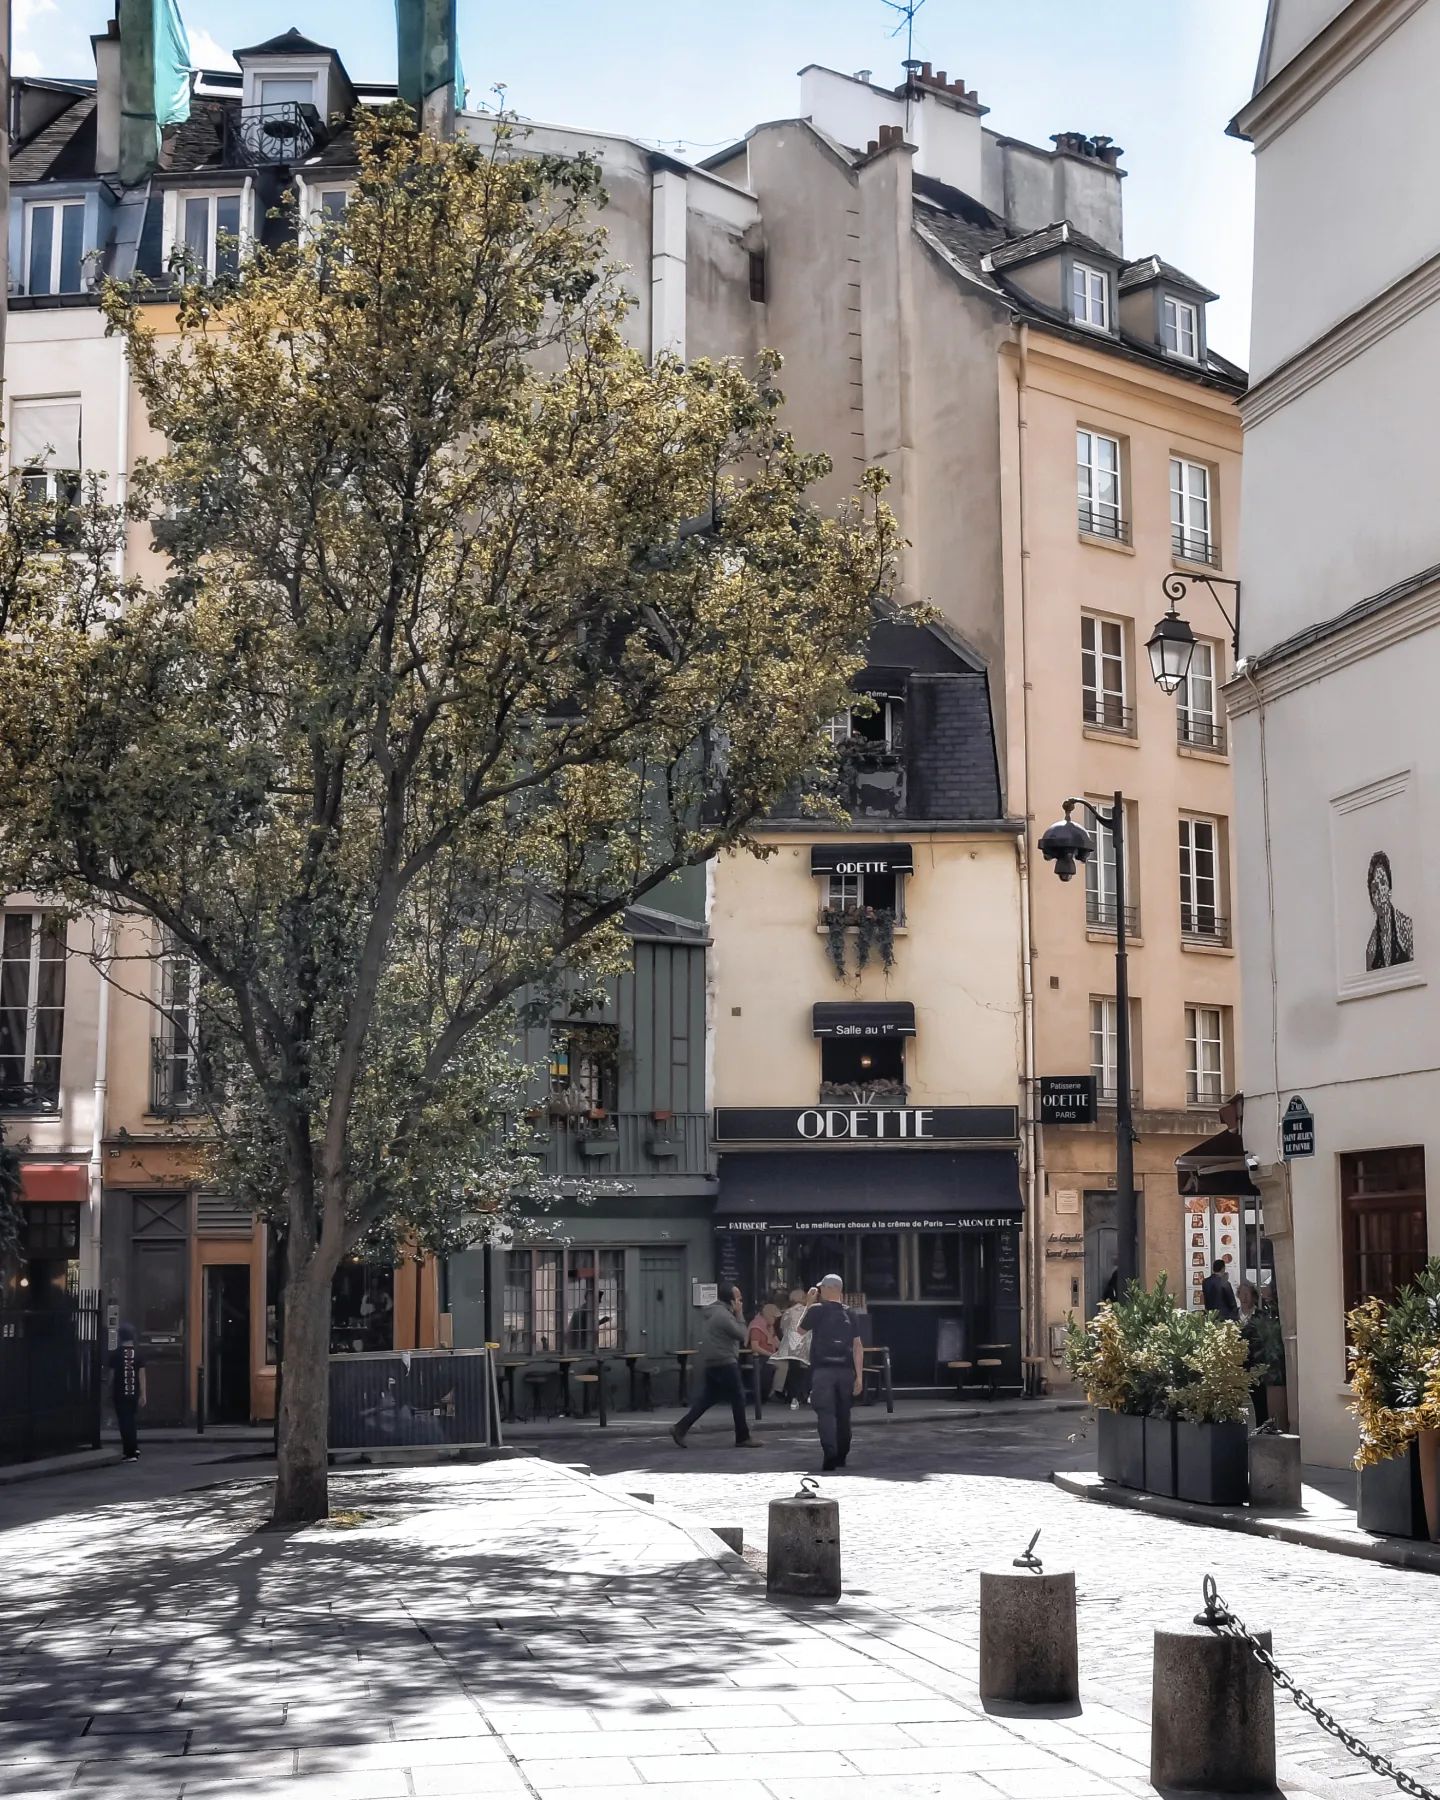 Eccomi di nuovo in rue de la Bûcherie 😊 Che faccio, non giro in rue Saint-Julien-le-Pauvre? Mais bien sûr que oui!
Secondo voi, dove sto andando? 🤔 
Vi do un indizio: è pomeriggio e ho fame 😉
Indovinato? 😂  Bonne journée les amis 🤗
•
•
•
#vivreparis #paris #wheninparis #citybestview #seemyparis #parissecret #theprettycities #hello_france #visitparis #thisisparis 
#parisjetaime #parismonamour #prettylittleparis #chouette_paris
#myparisianlife 
#parigi #hello_paris #parismaville #secretsdeparis #parisobviously 
#frammentidiparigi #divine_worldplaces #parisblog #parisbyday #parisincredible
#igersparis #igersfrance #mylittleparis 
#instaparis